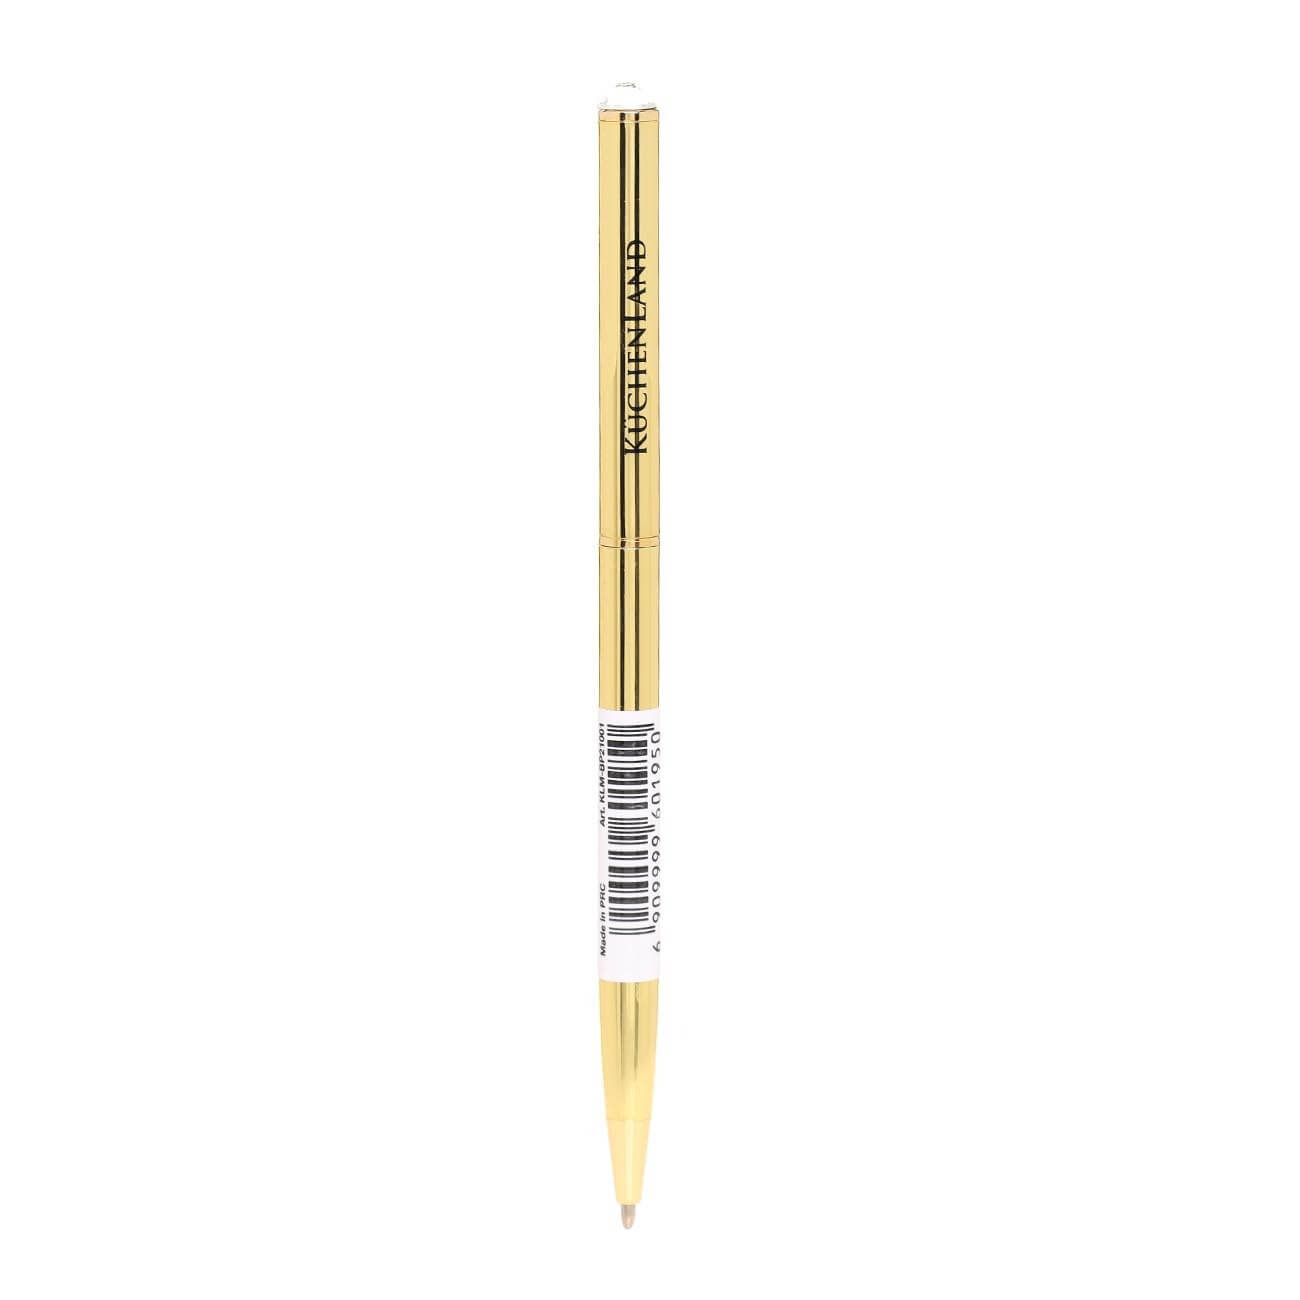 Ручка шариковая, 13 см, с кристаллом, металл, золотистая, Draw ручка металл шариковая